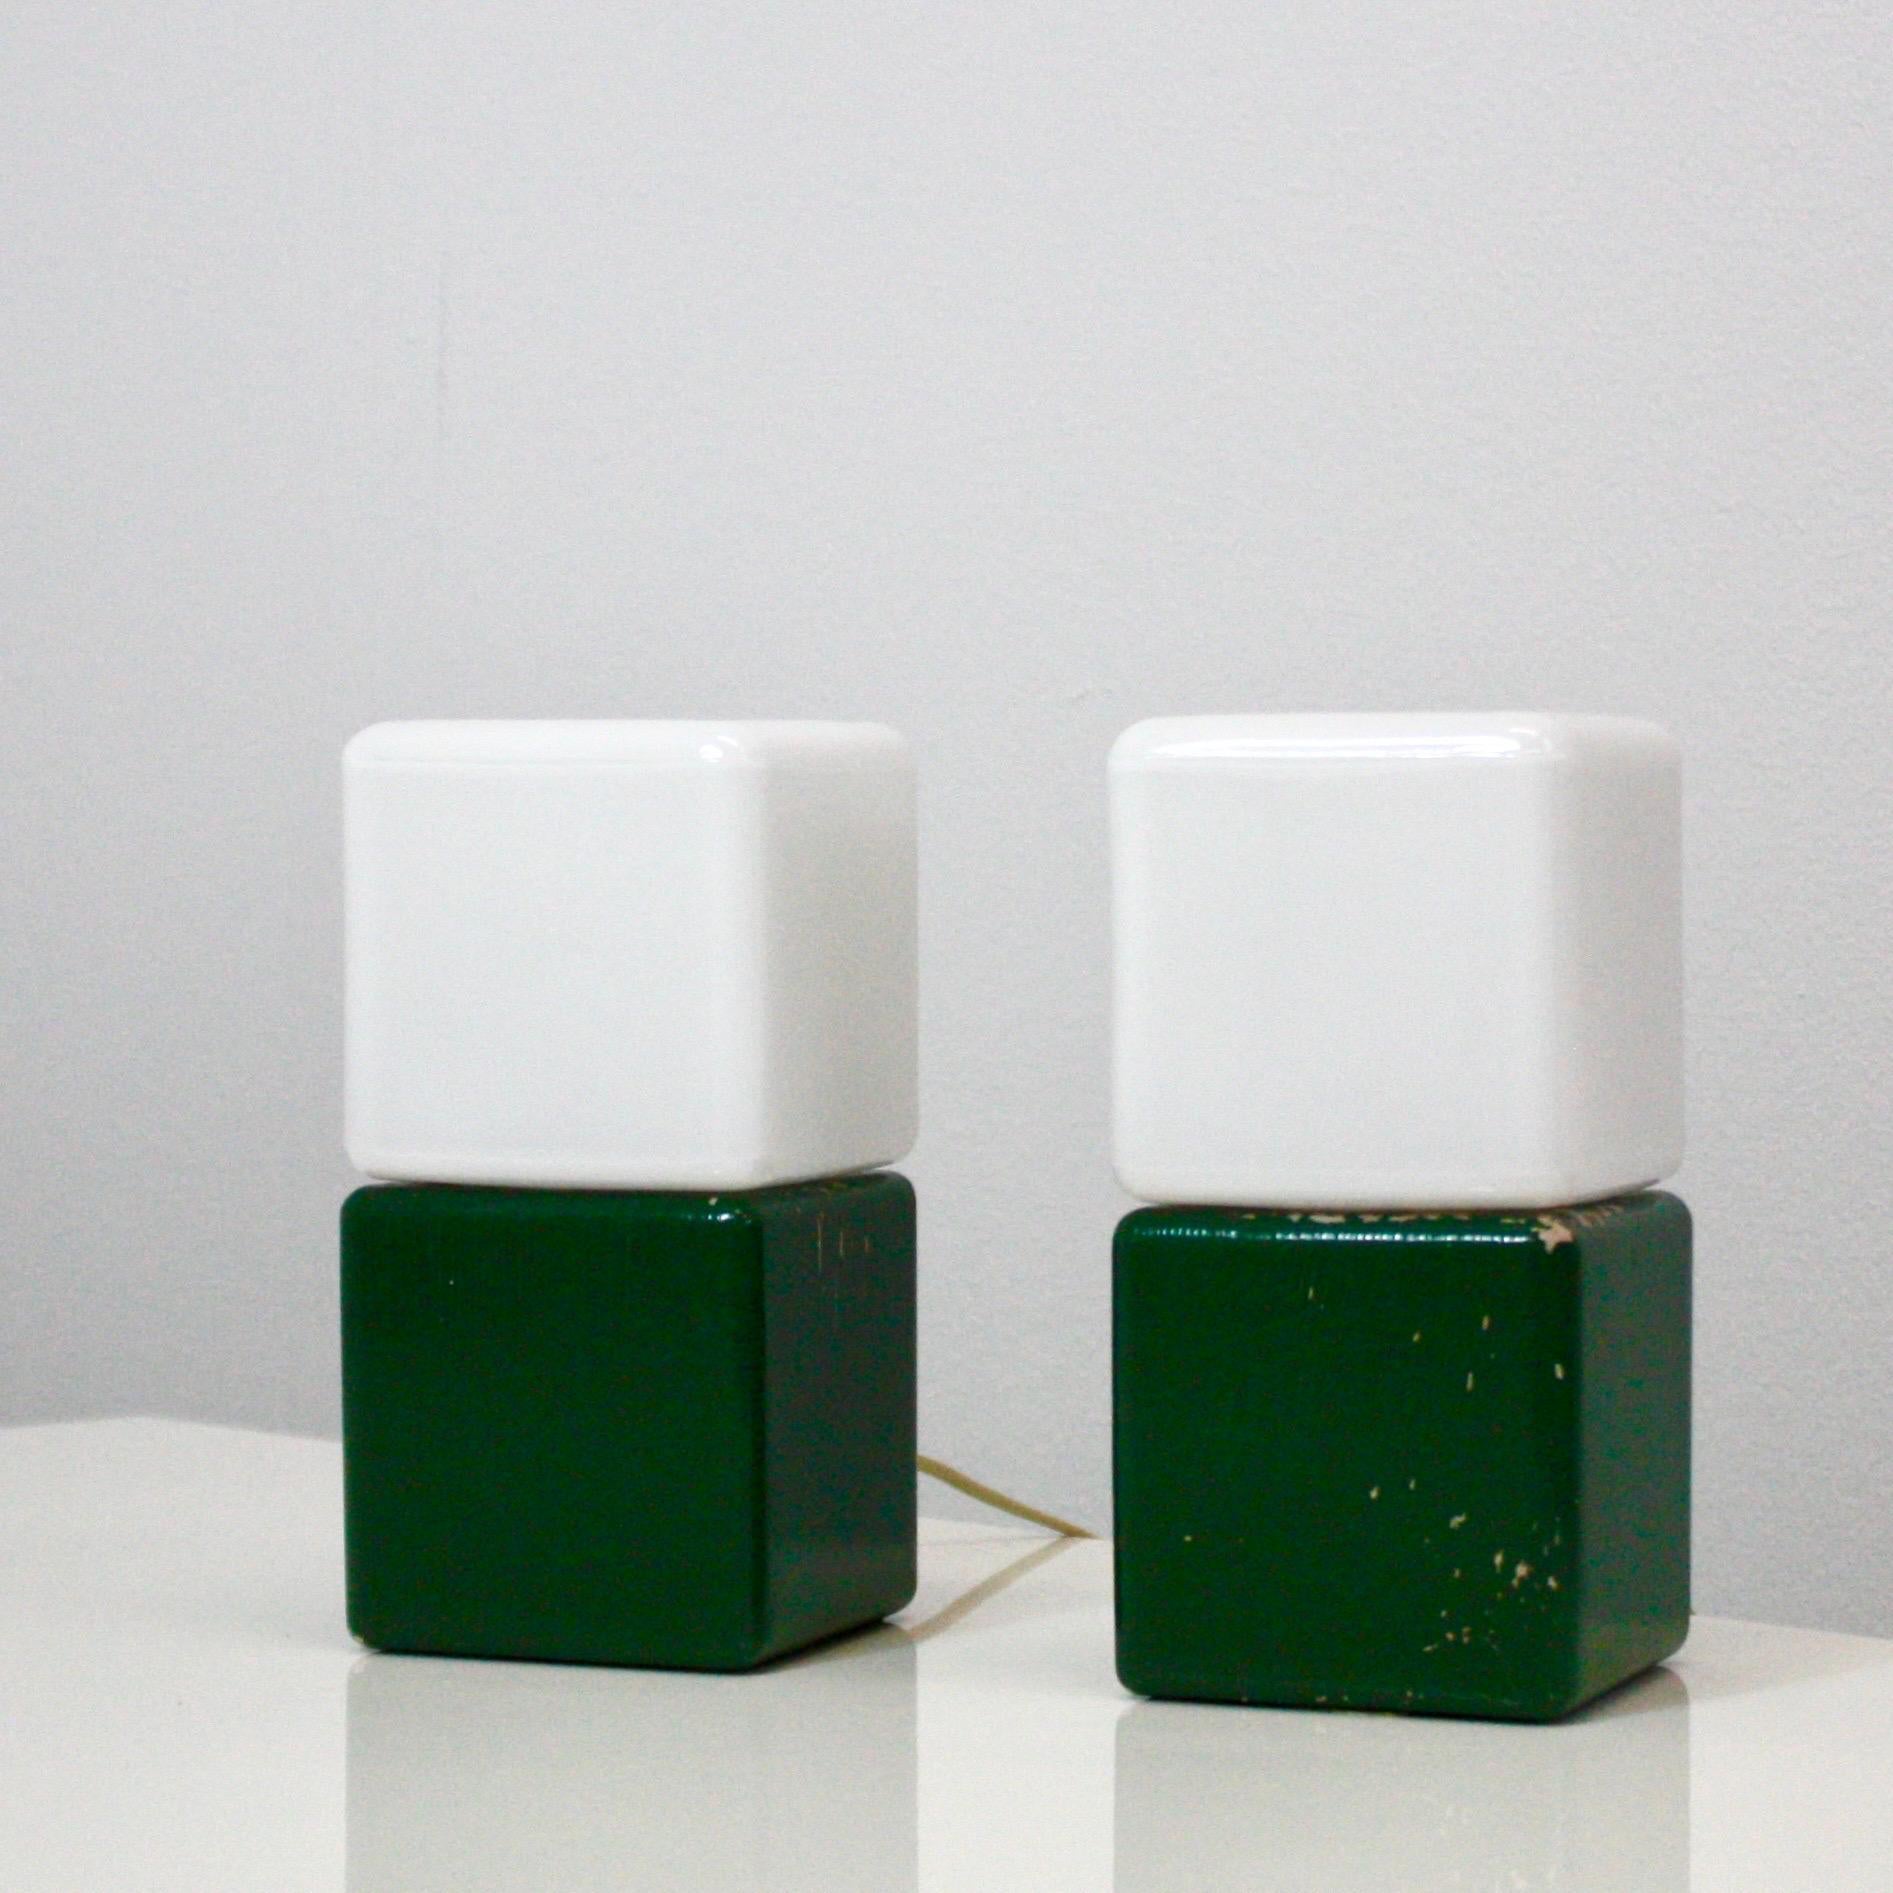 Paire de lampes de nuit rares conçues par le designer Svend Aage Holm Sørensen au début des années 1960. Les lampes présentent des bases en bois vert et des abat-jours en verre blanc de forme cubique.

* Une paire (2) de lampes de chevet/de bureau